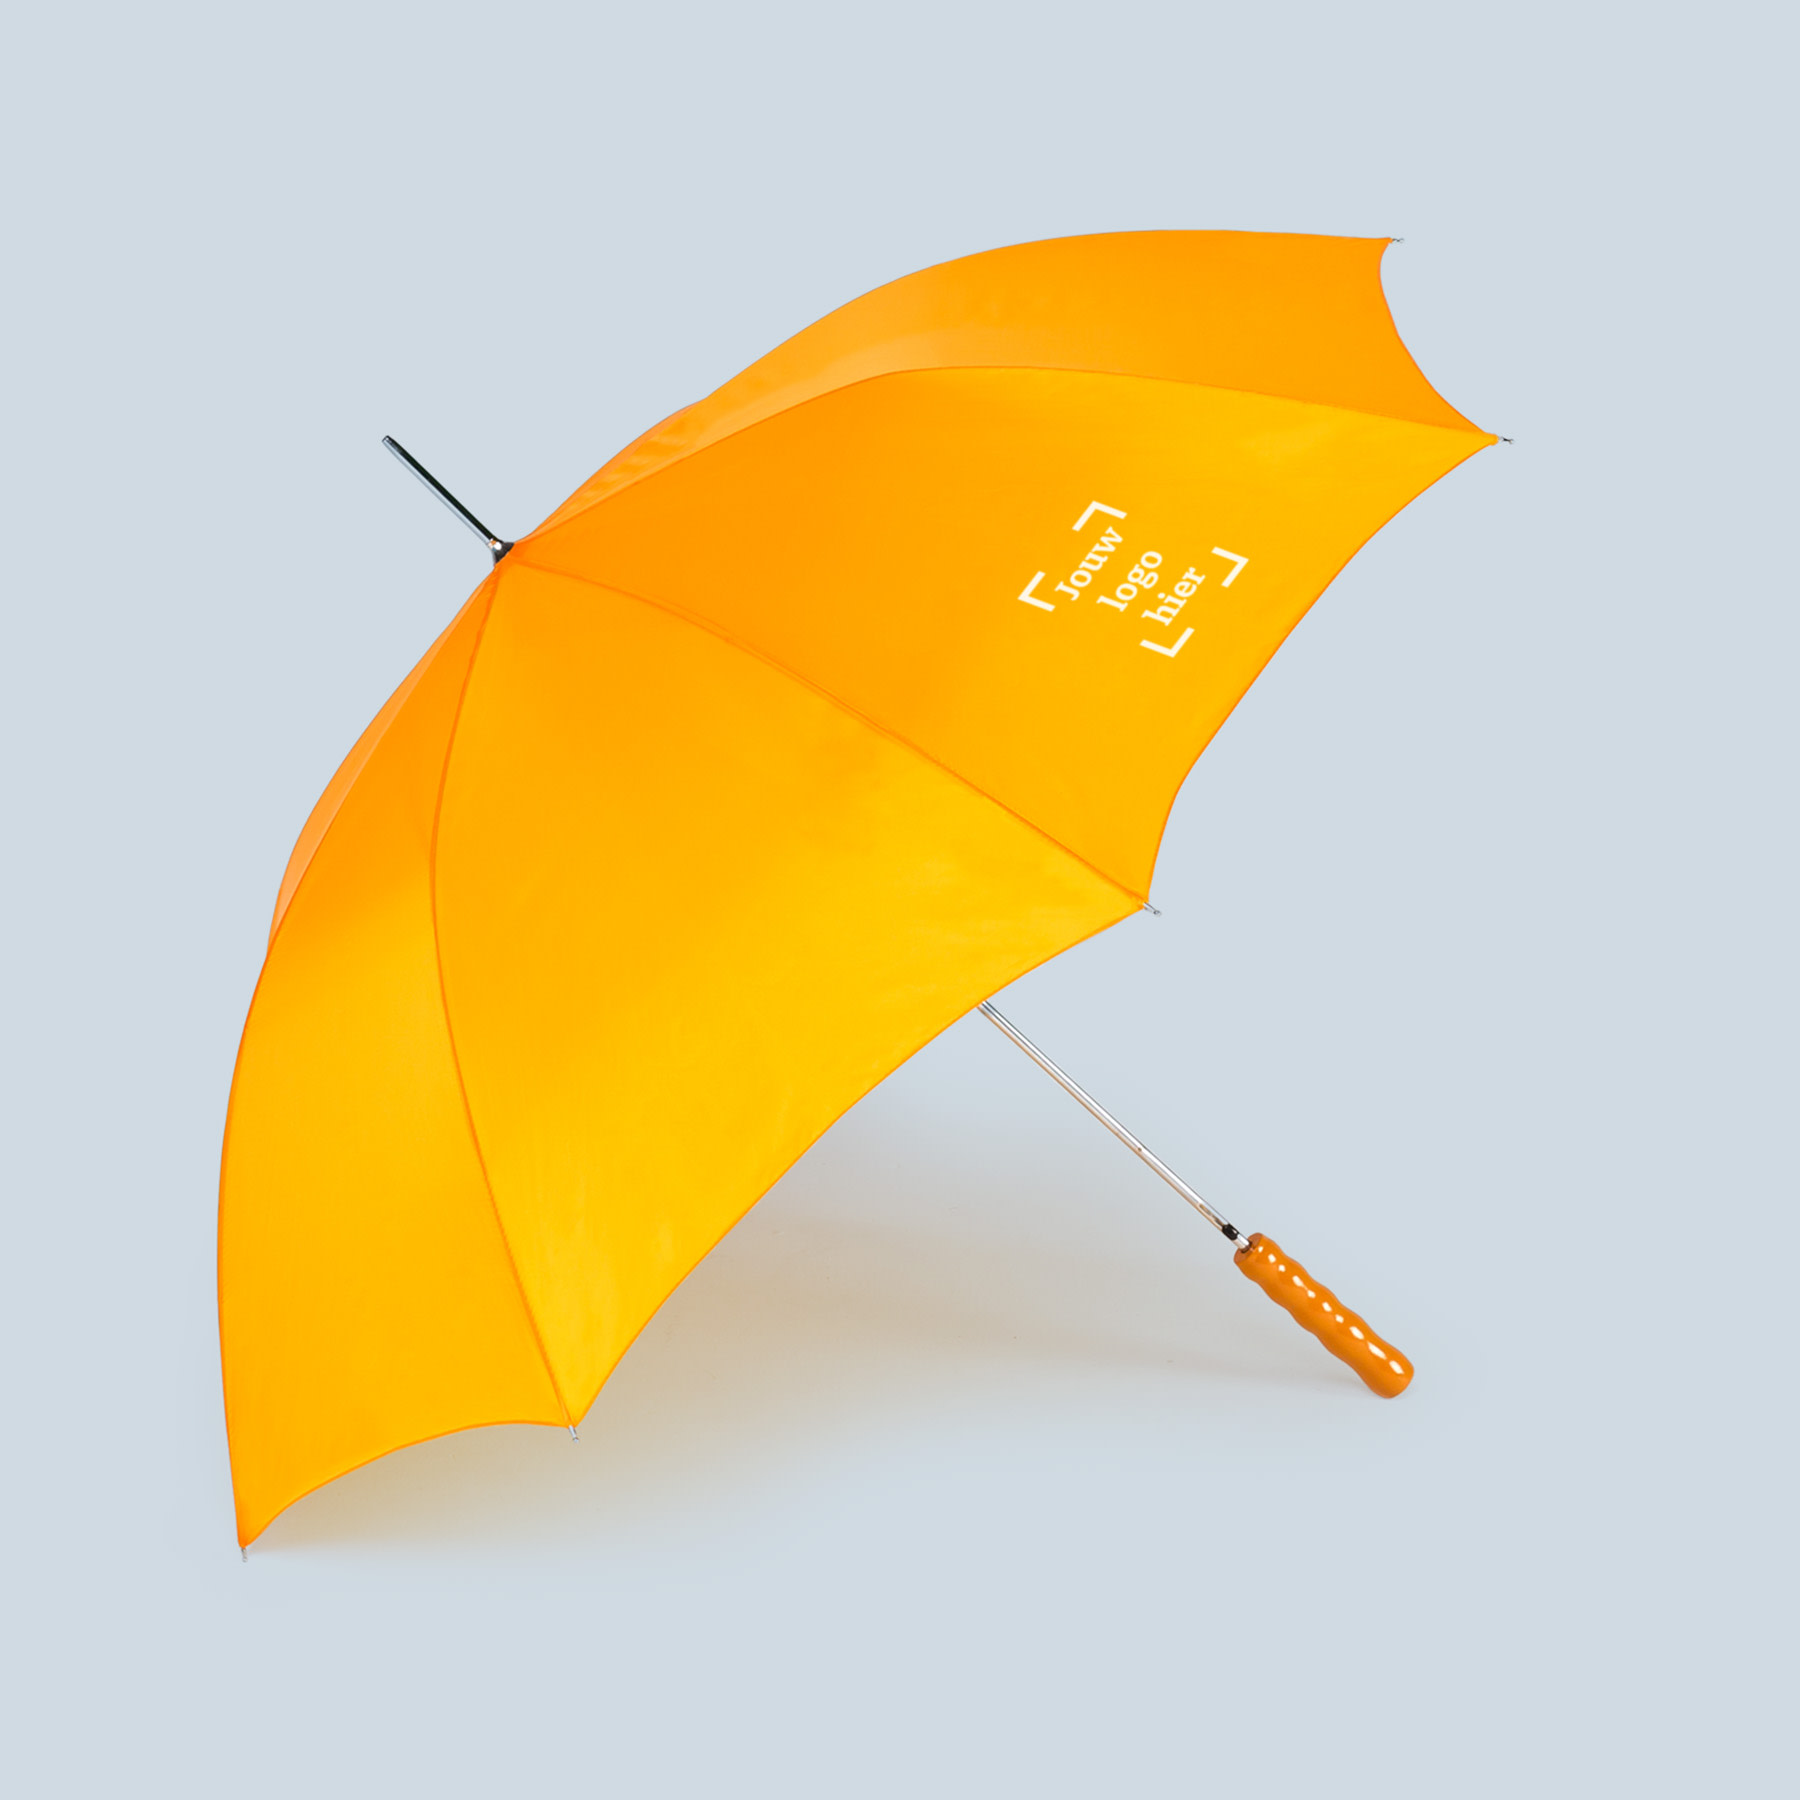 productbeelden je-merk-binnen-handbereik paraplu